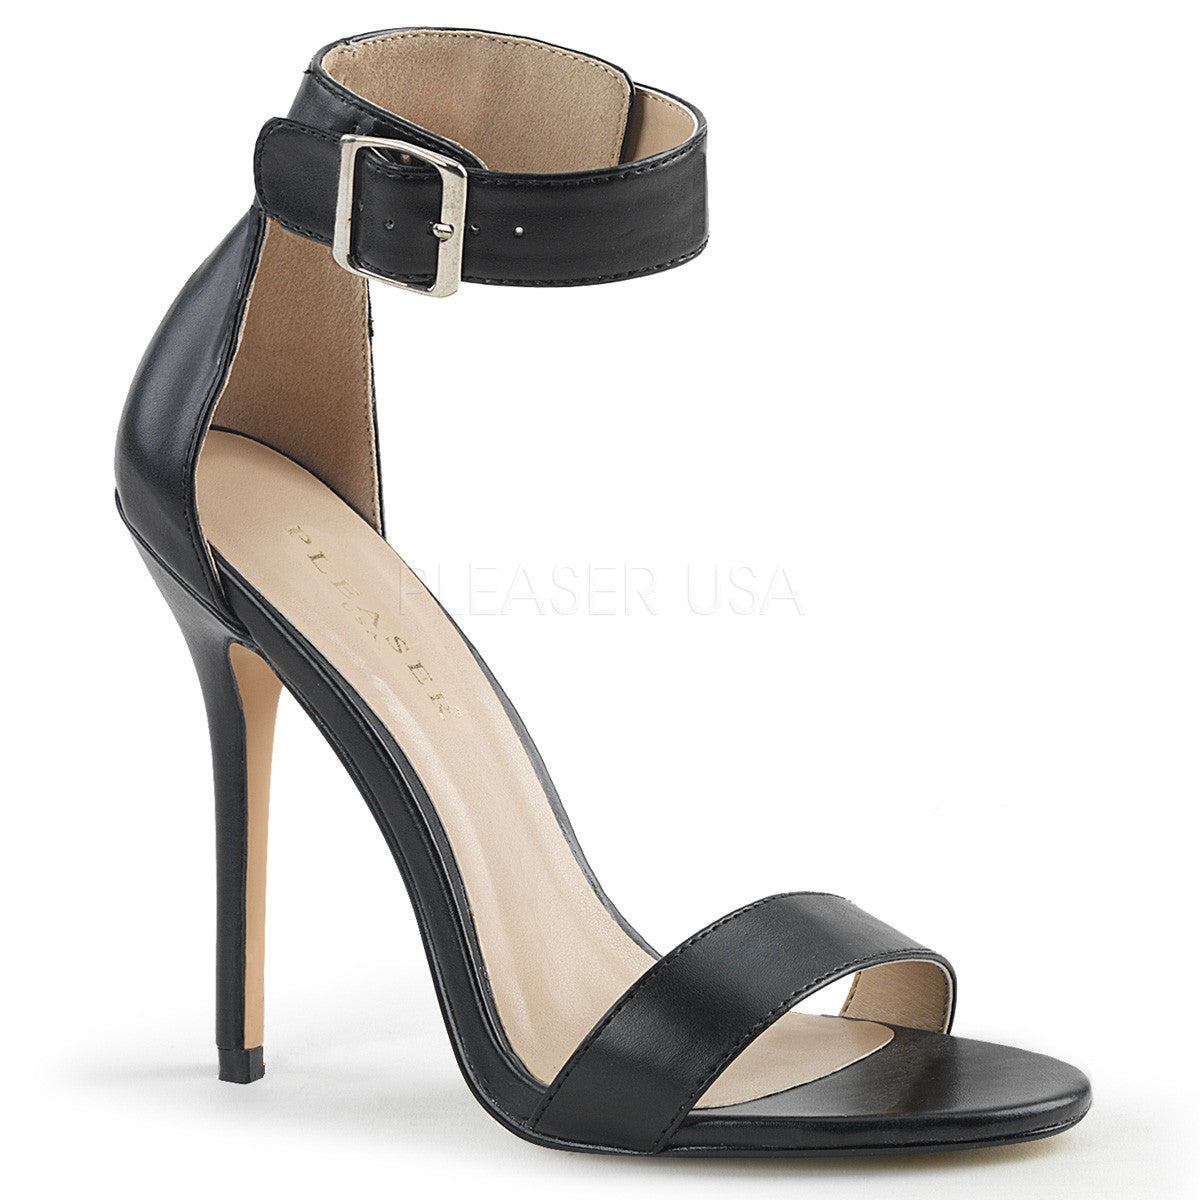 5" Heel AMUSE-10 Black Pu Ankle Strap Sandal